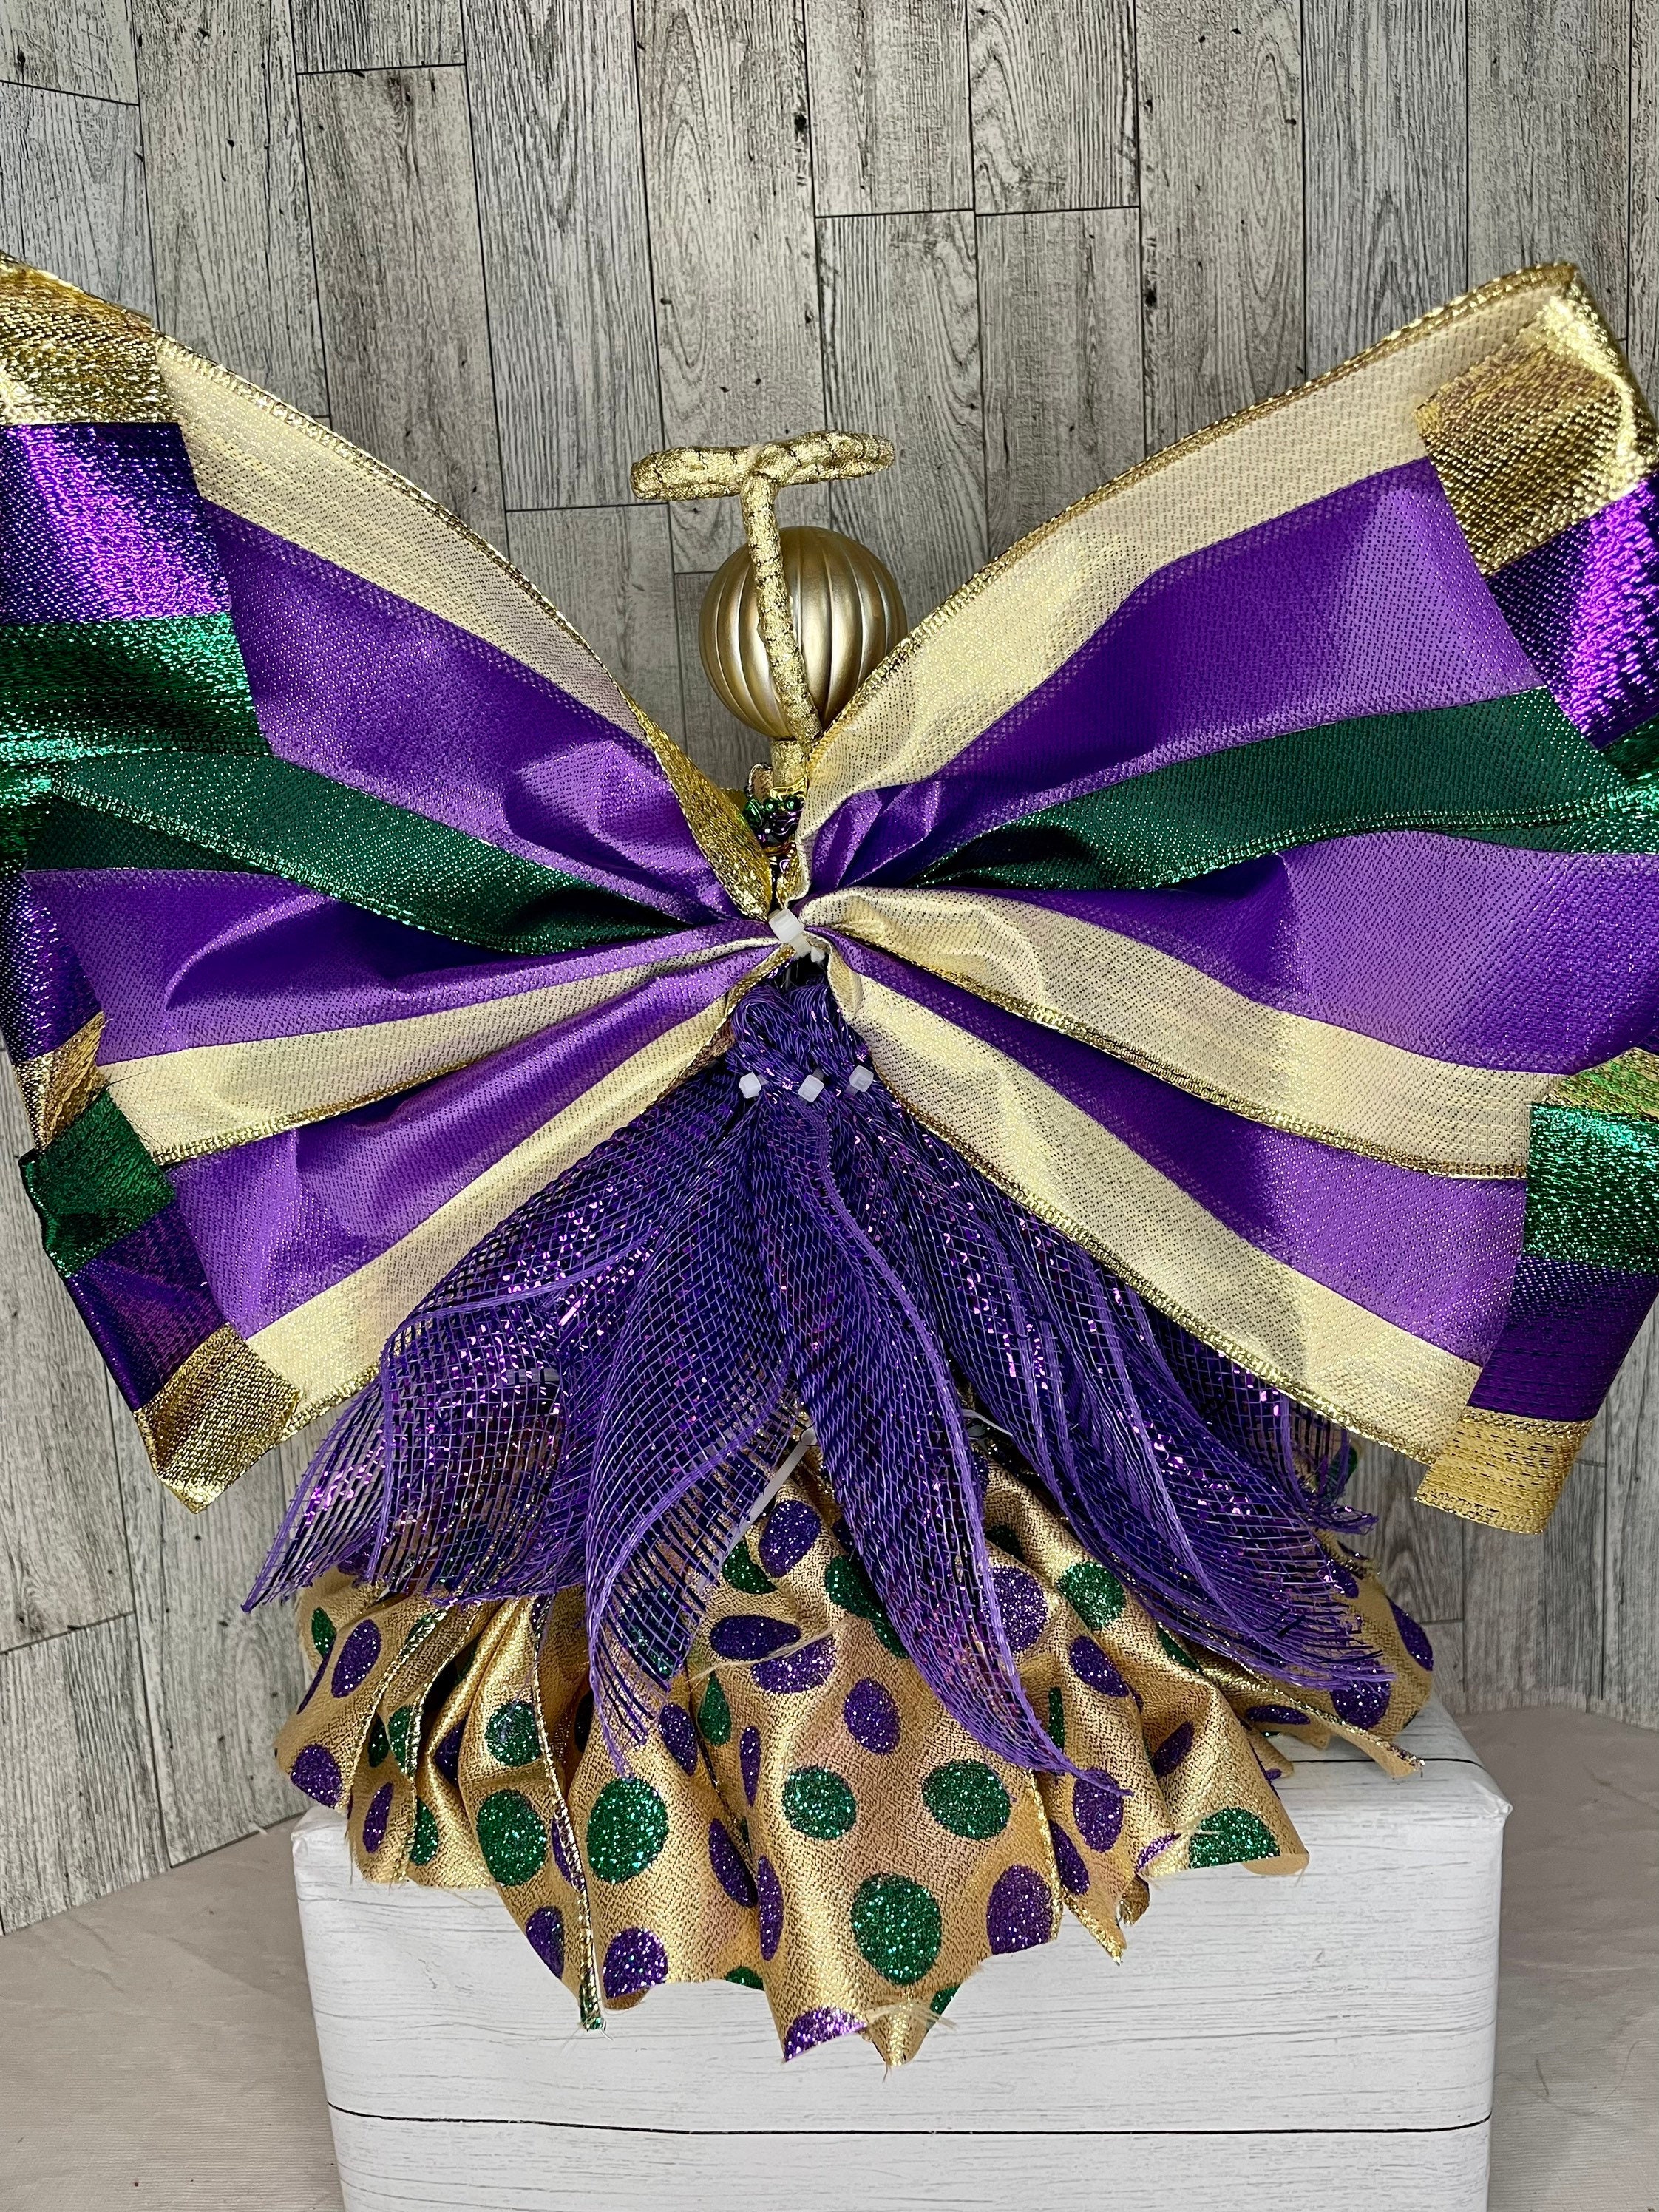  Retisee 11.8 Mardi Gras Tree Topper Mardi Gras Fleur-de-lis  Ornaments Purple Green Gold Glitter Decoration Mardi Gras Bows for Mardi  Gras Carnival Party Decor : Home & Kitchen